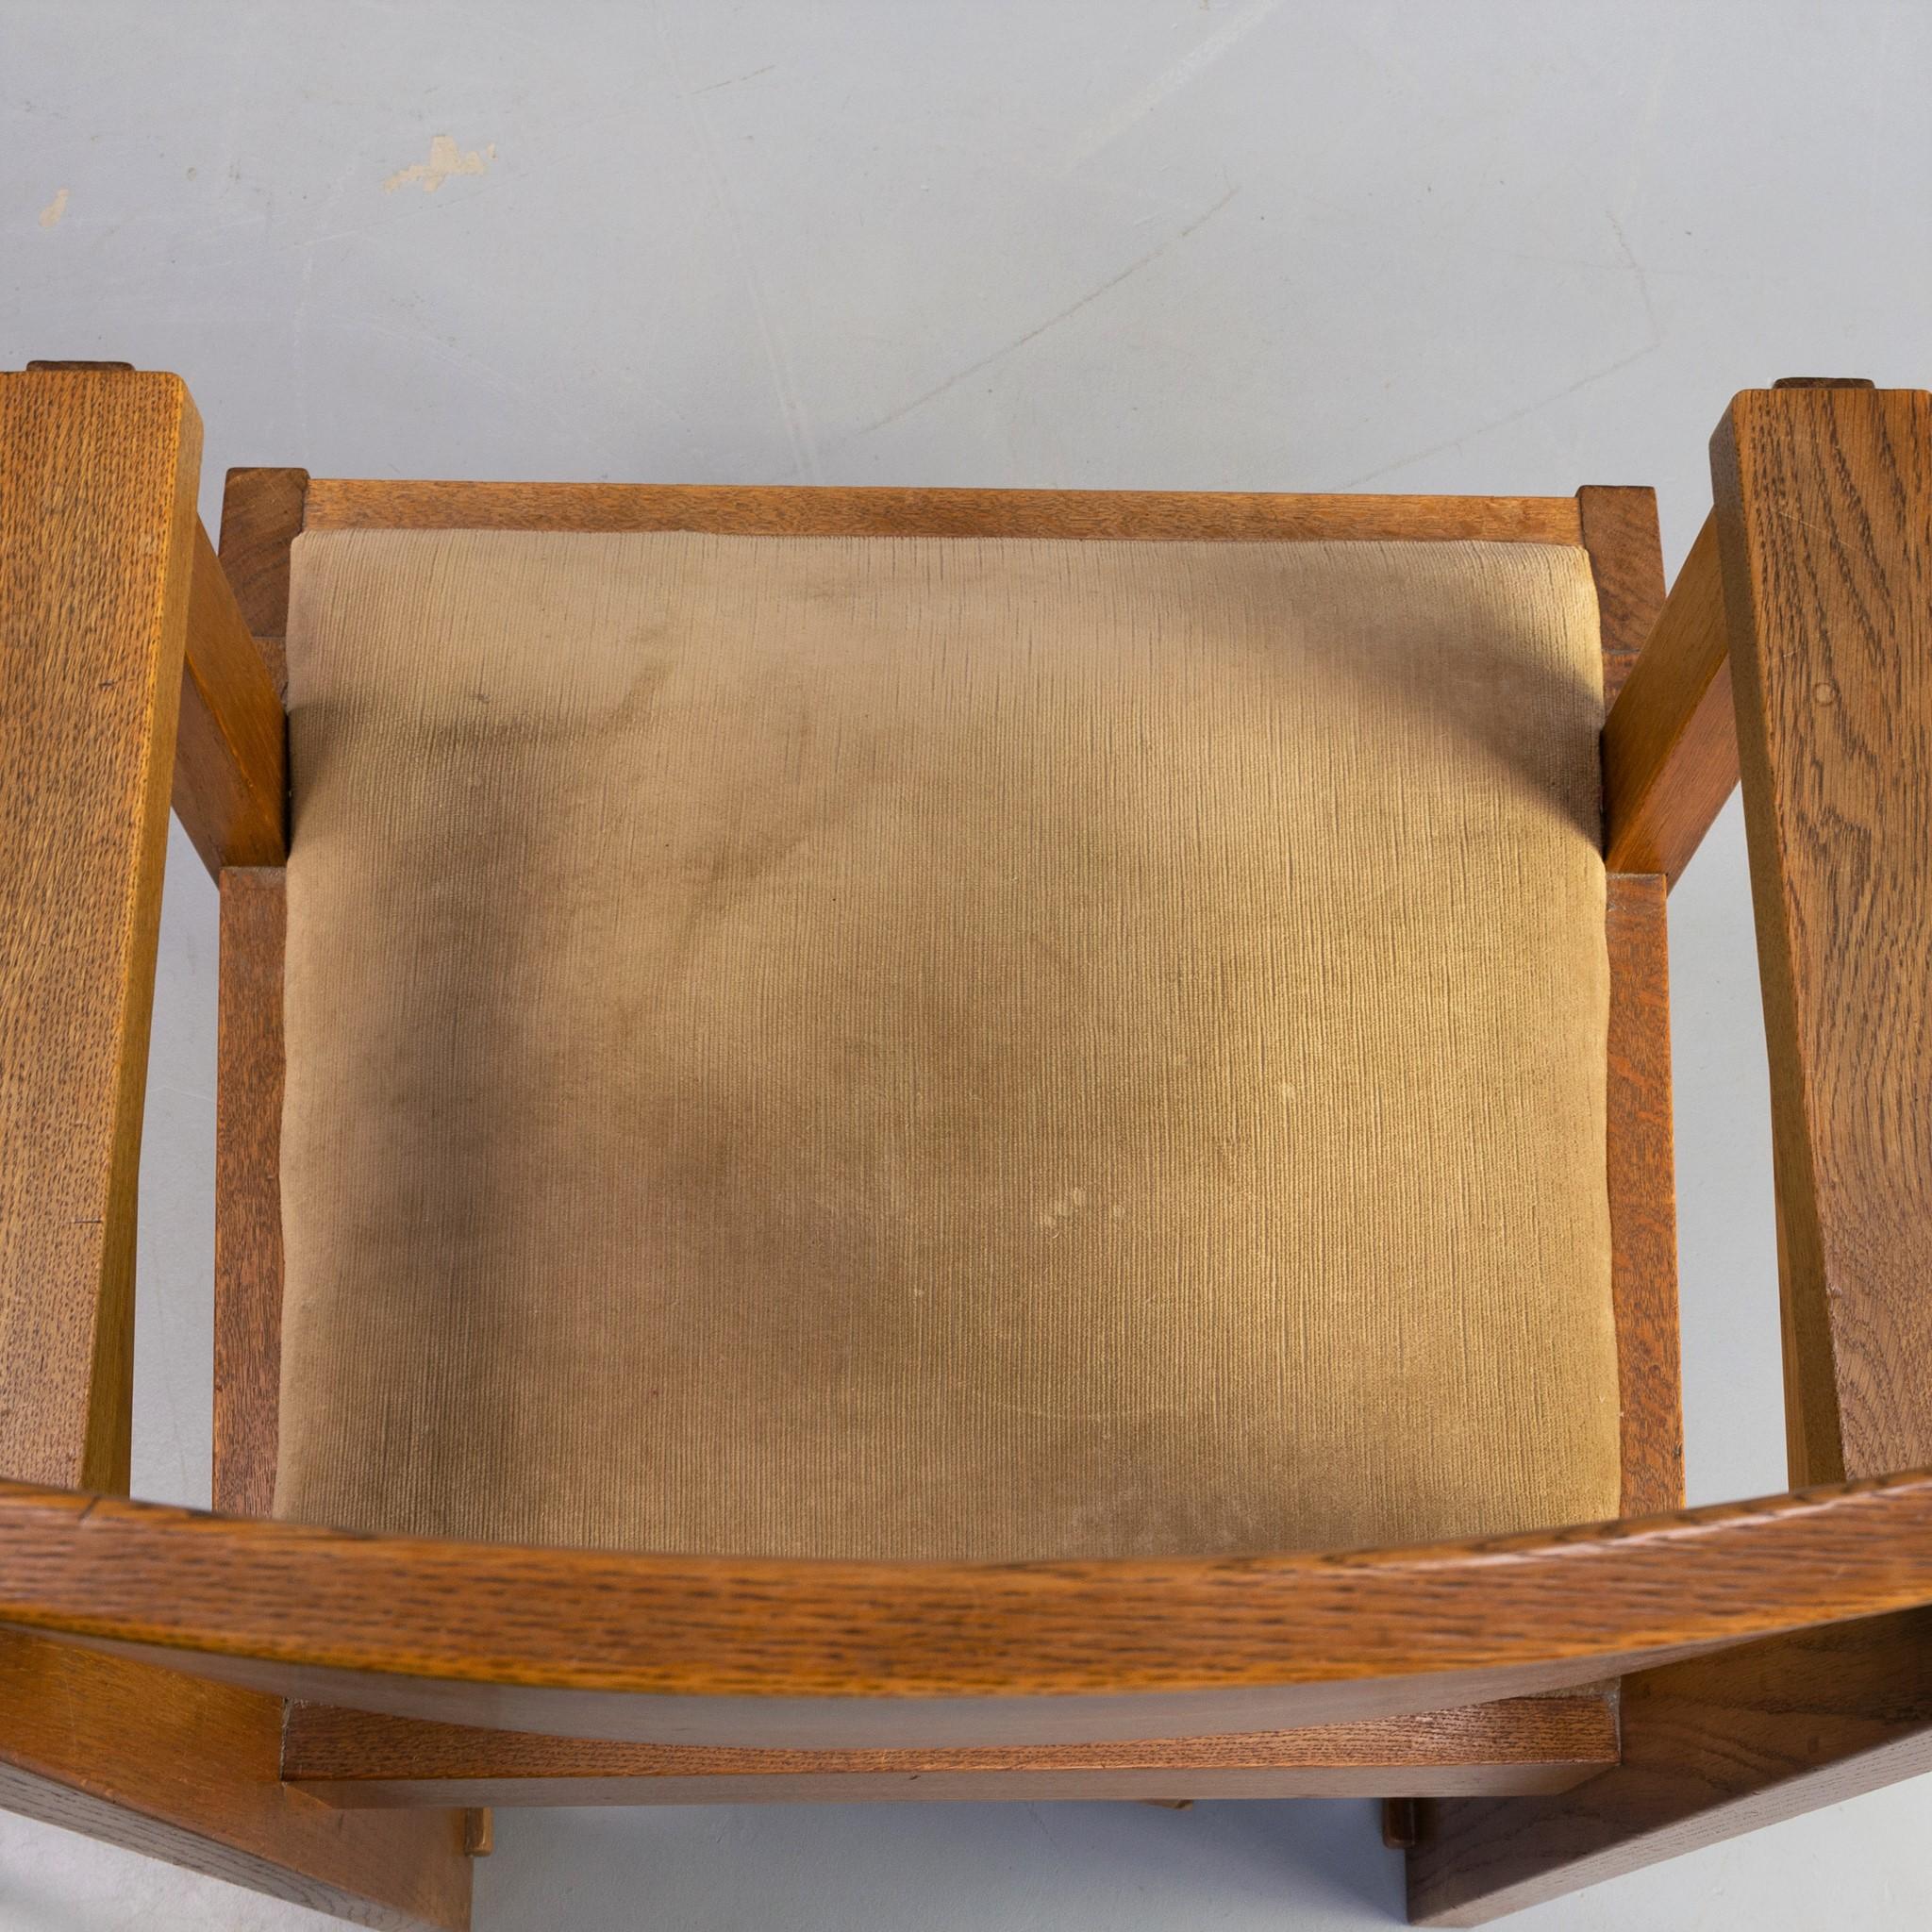 Skulpturaler Art-déco-Stuhl aus massivem Eichenholz im Stil der Haagschen Schule.
Die Details, die Materialien und das fast modernistische Aussehen des Entwurfs entsprechen dem Stil der Haagse School. Dieser Stil wurde nicht so sehr von den